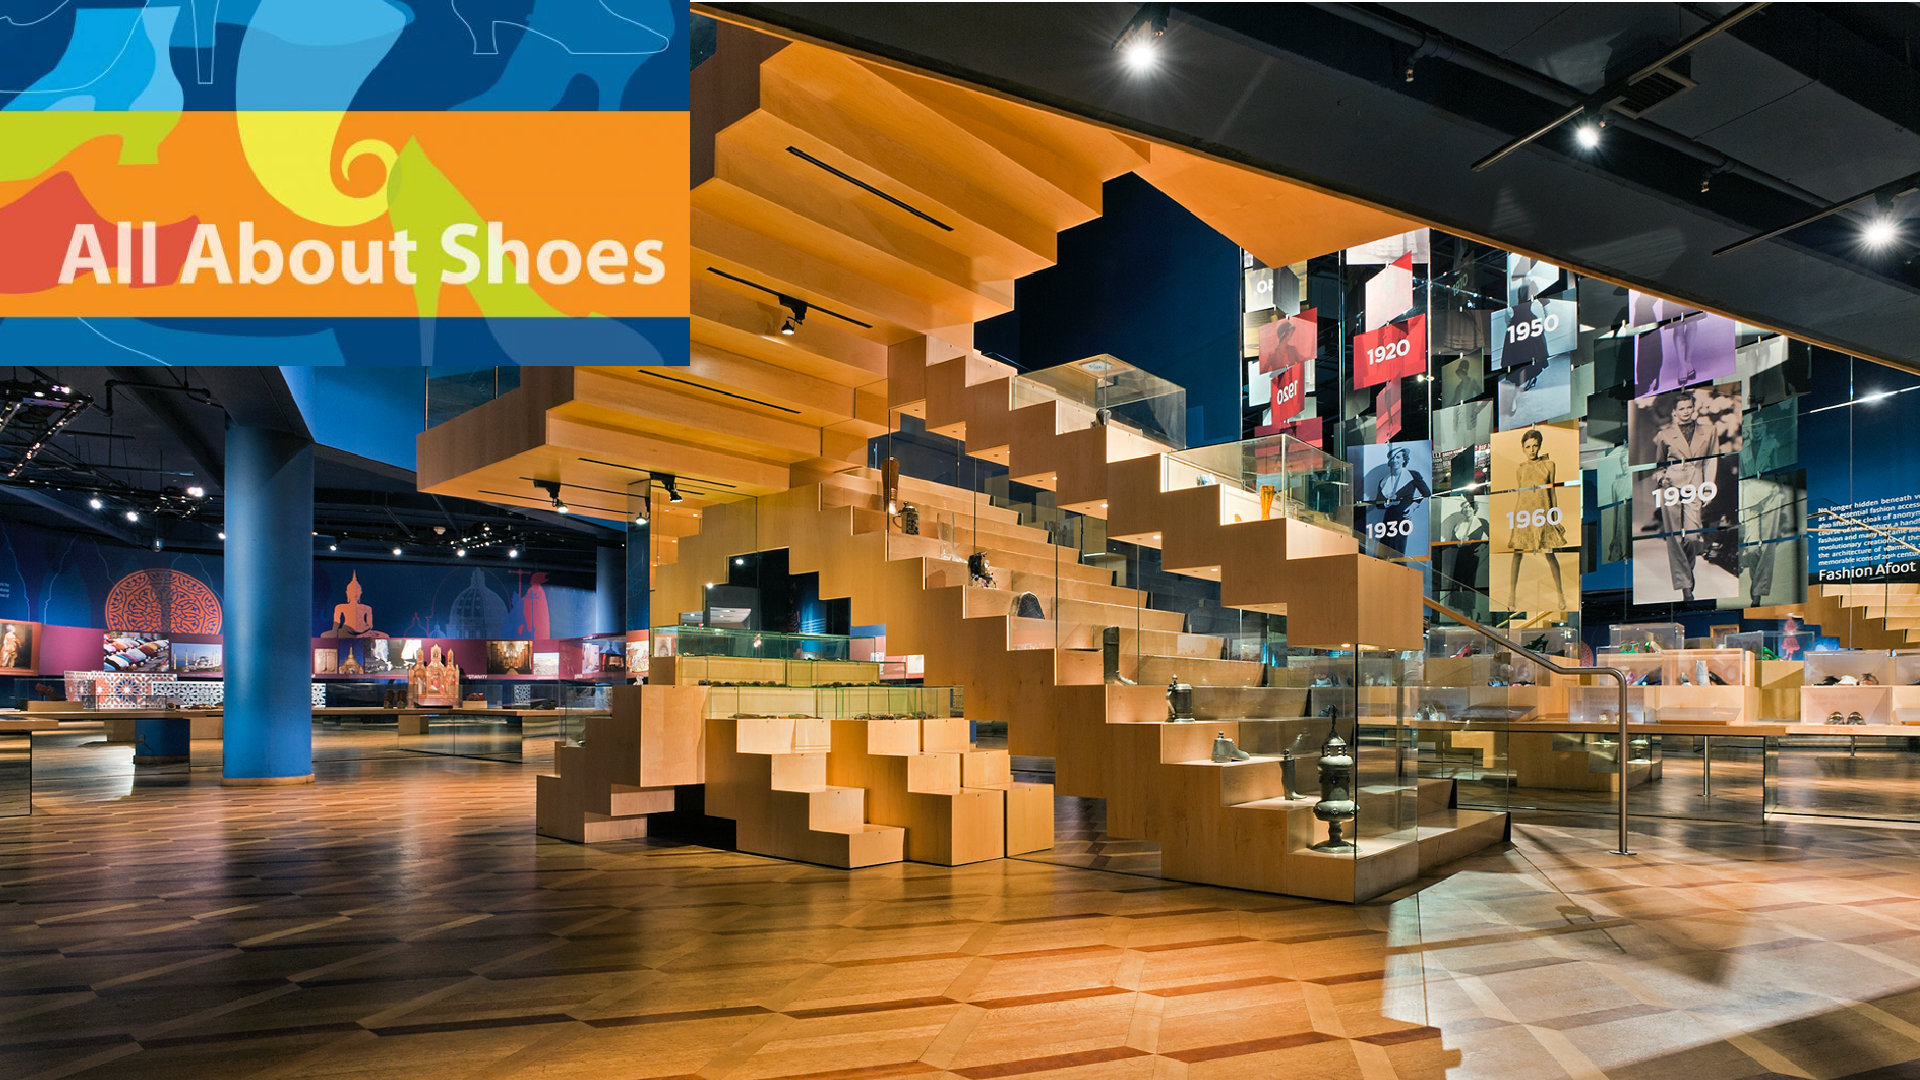 Explore the Bata Shoe Museum's Newest Exhibition